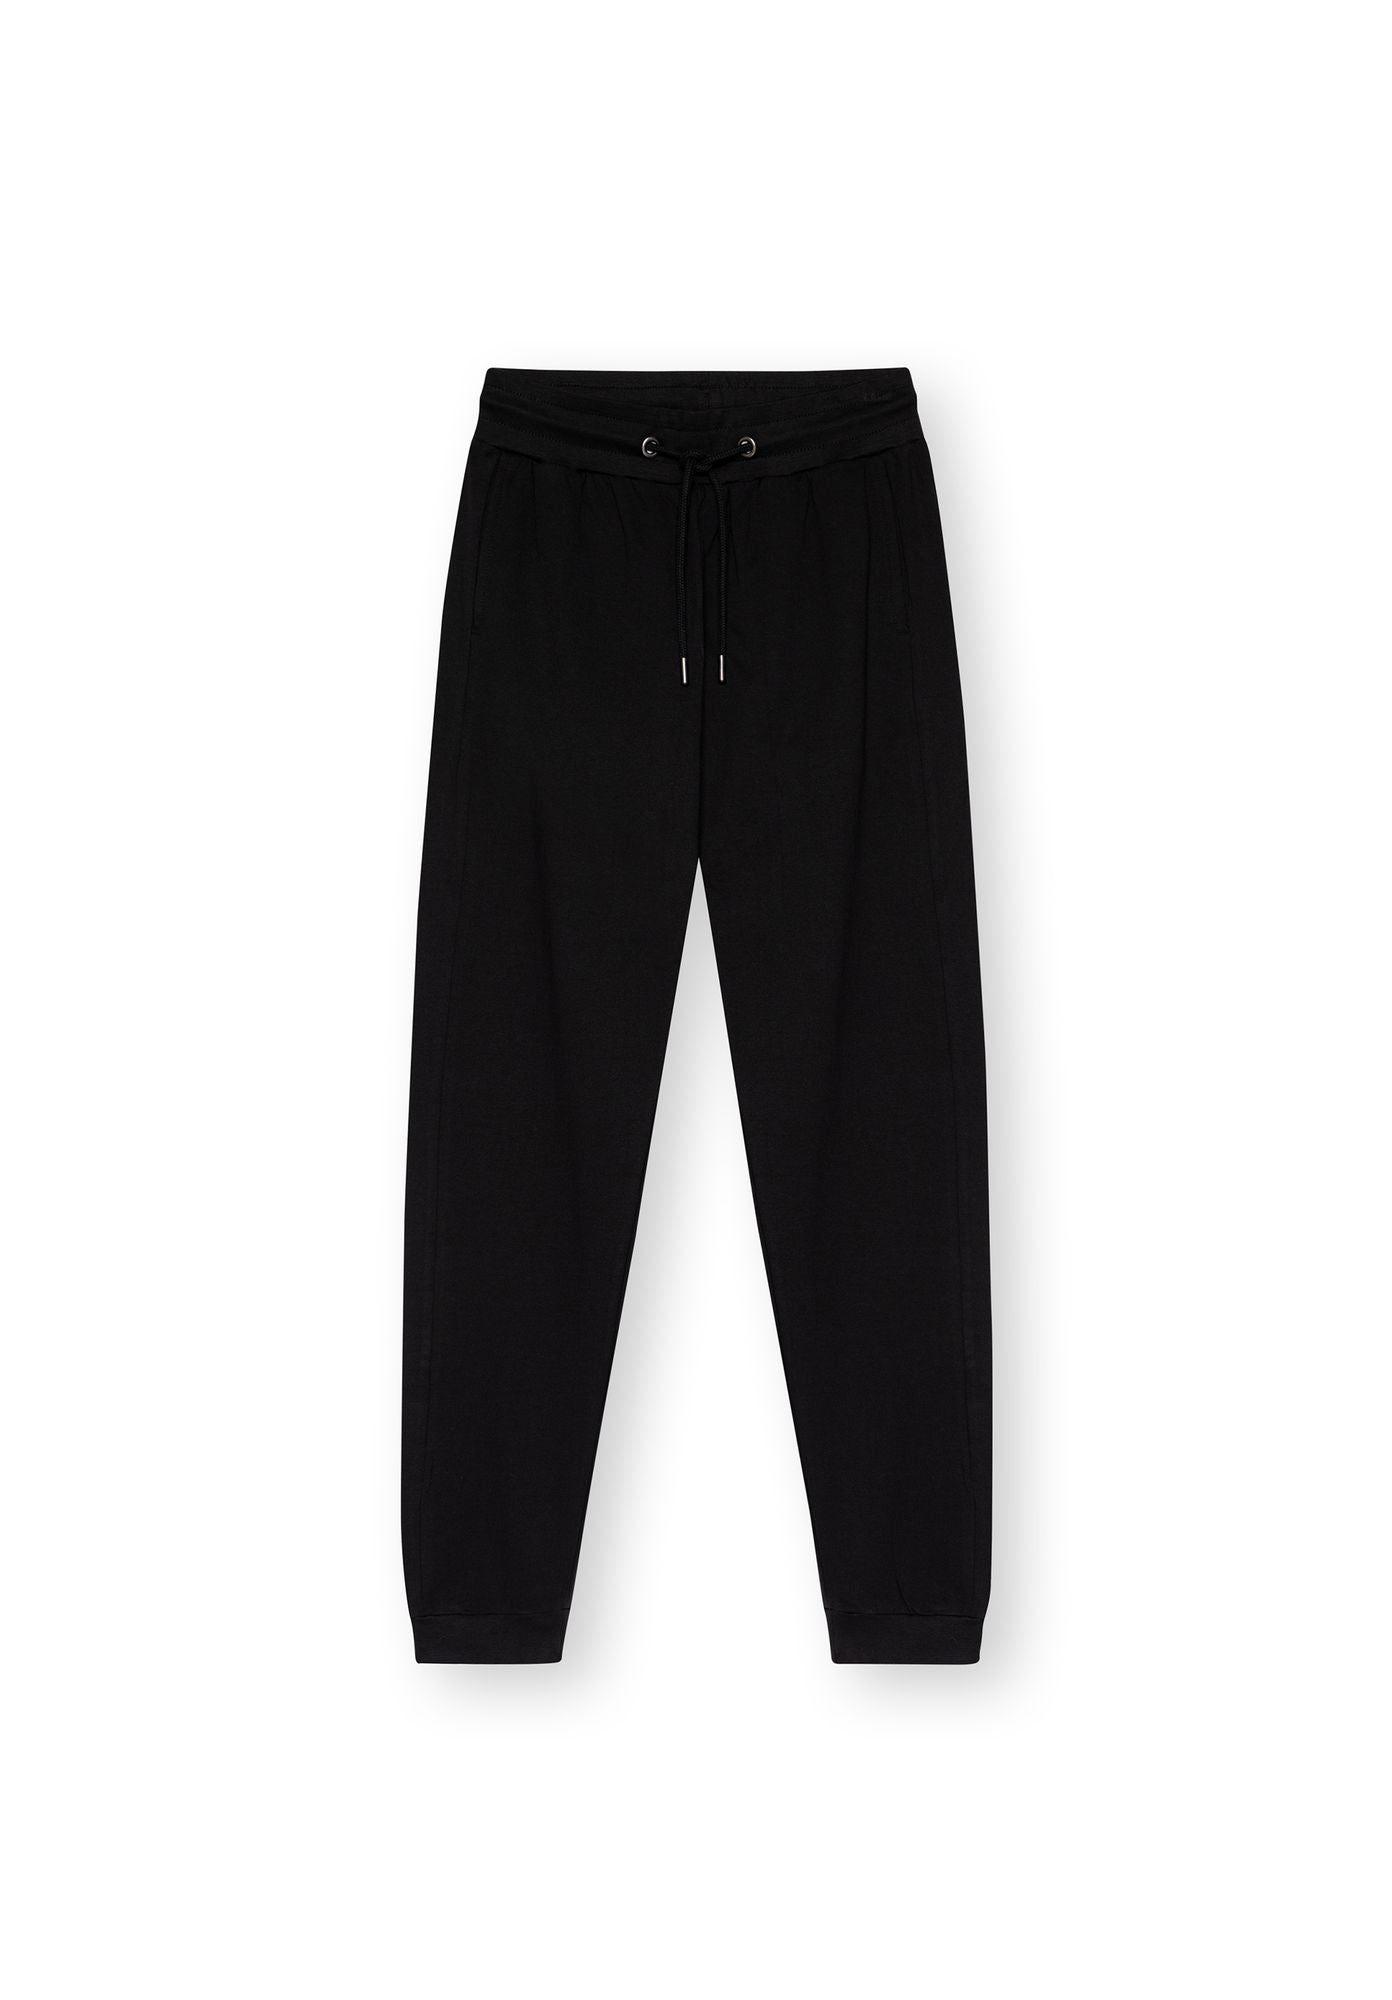 Black organic cotton jogging pants TT1015 from Thokkthokk